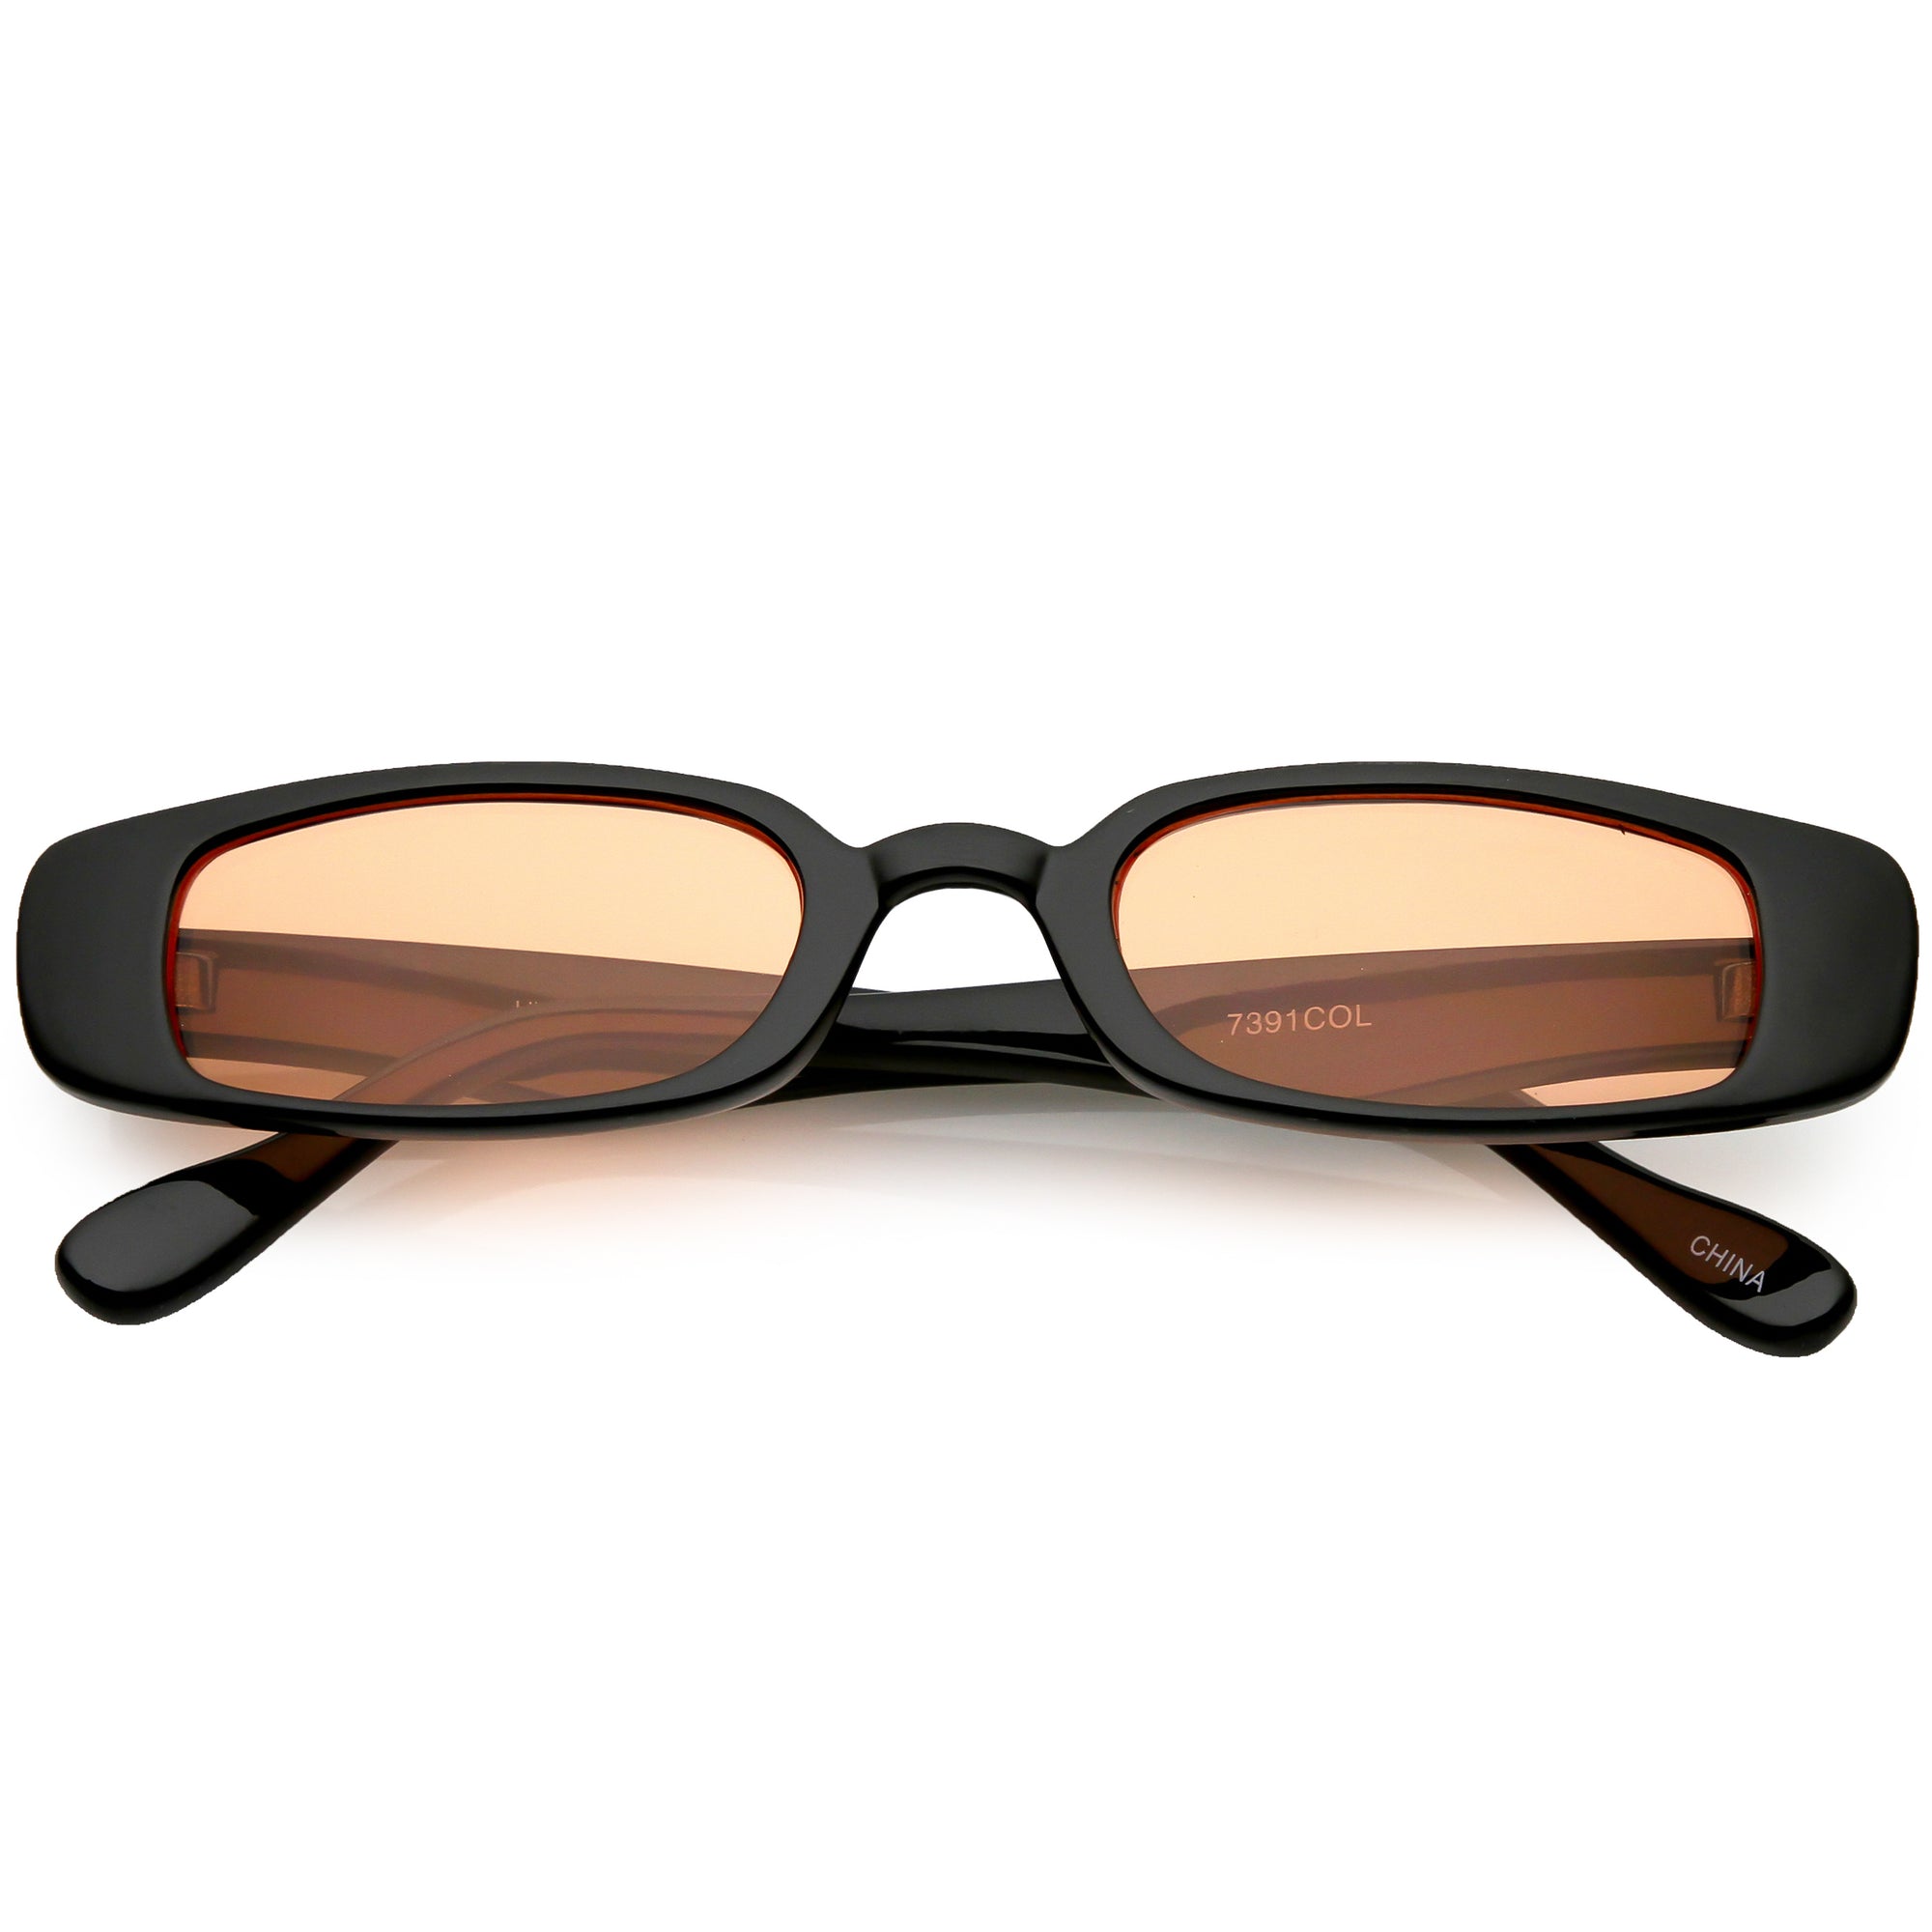 Chloé 63mm Geometric Sunglasses in Natural